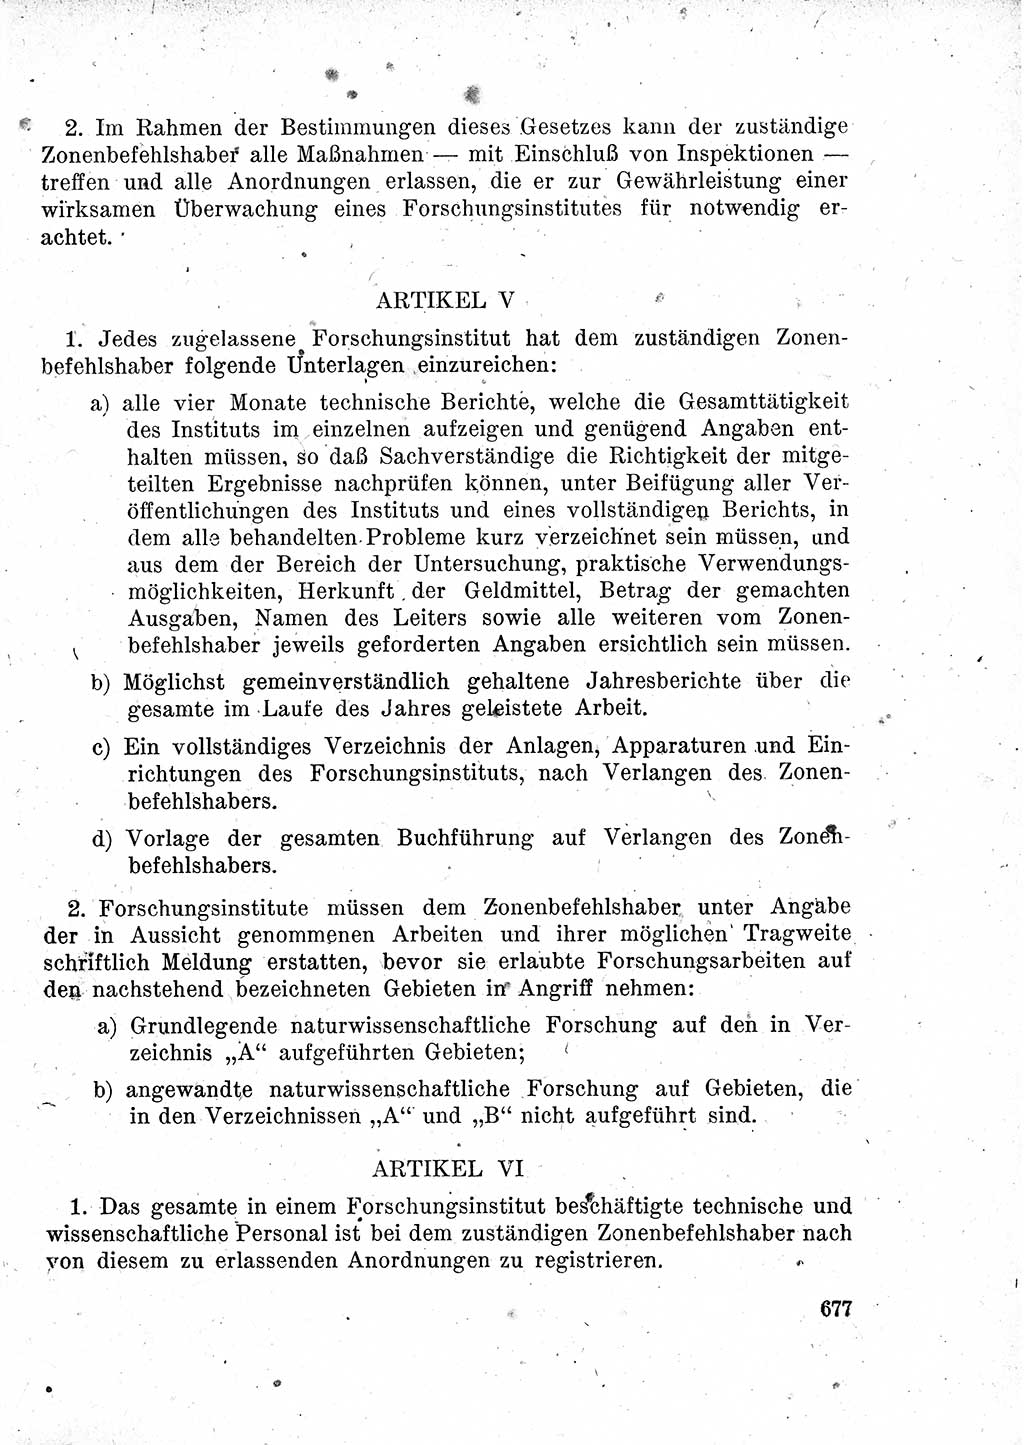 Das Recht der Besatzungsmacht (Deutschland), Proklamationen, Deklerationen, Verordnungen, Gesetze und Bekanntmachungen 1947, Seite 677 (R. Bes. Dtl. 1947, S. 677)